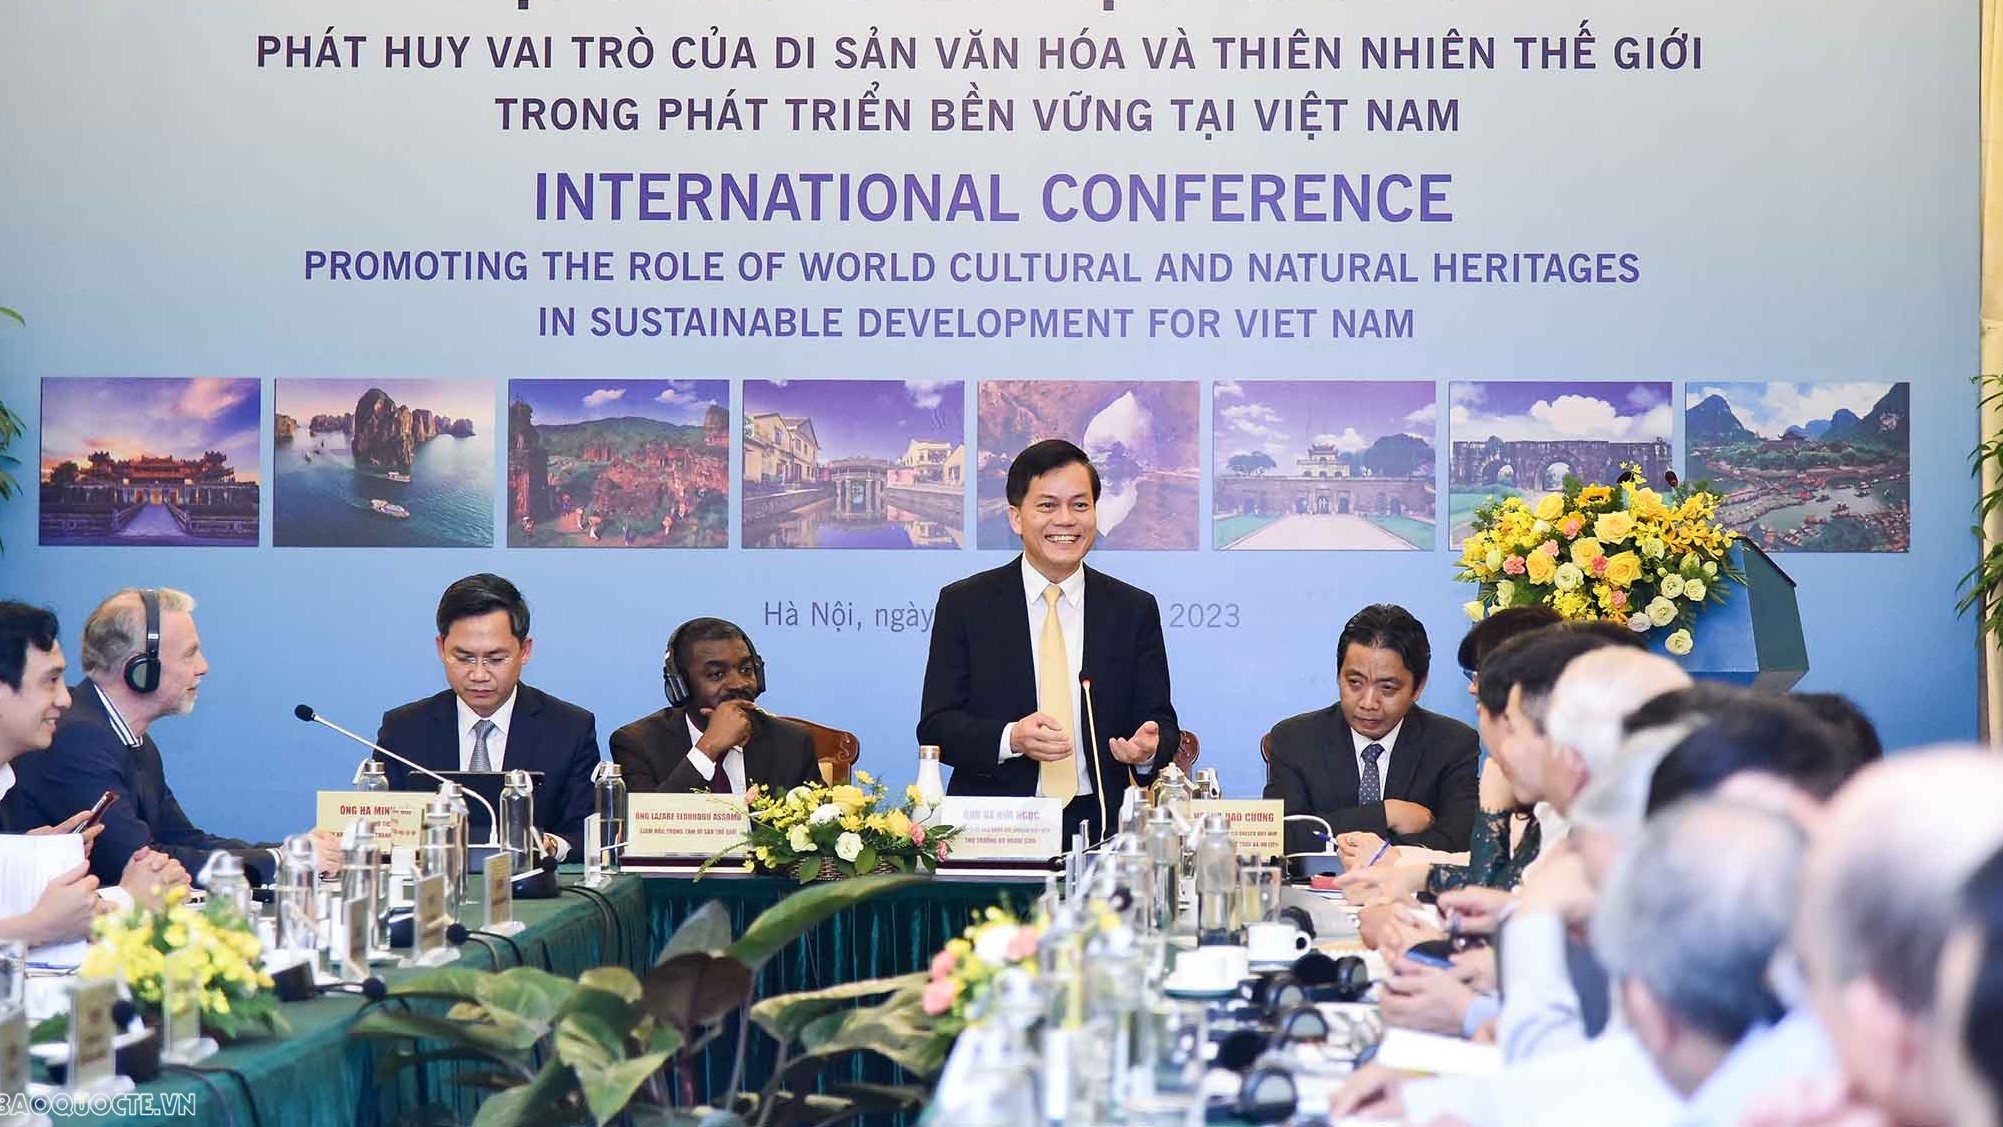 Phát huy vai trò của di sản văn hóa và thiên nhiên thế giới trong phát triển bền vững tại Việt Nam